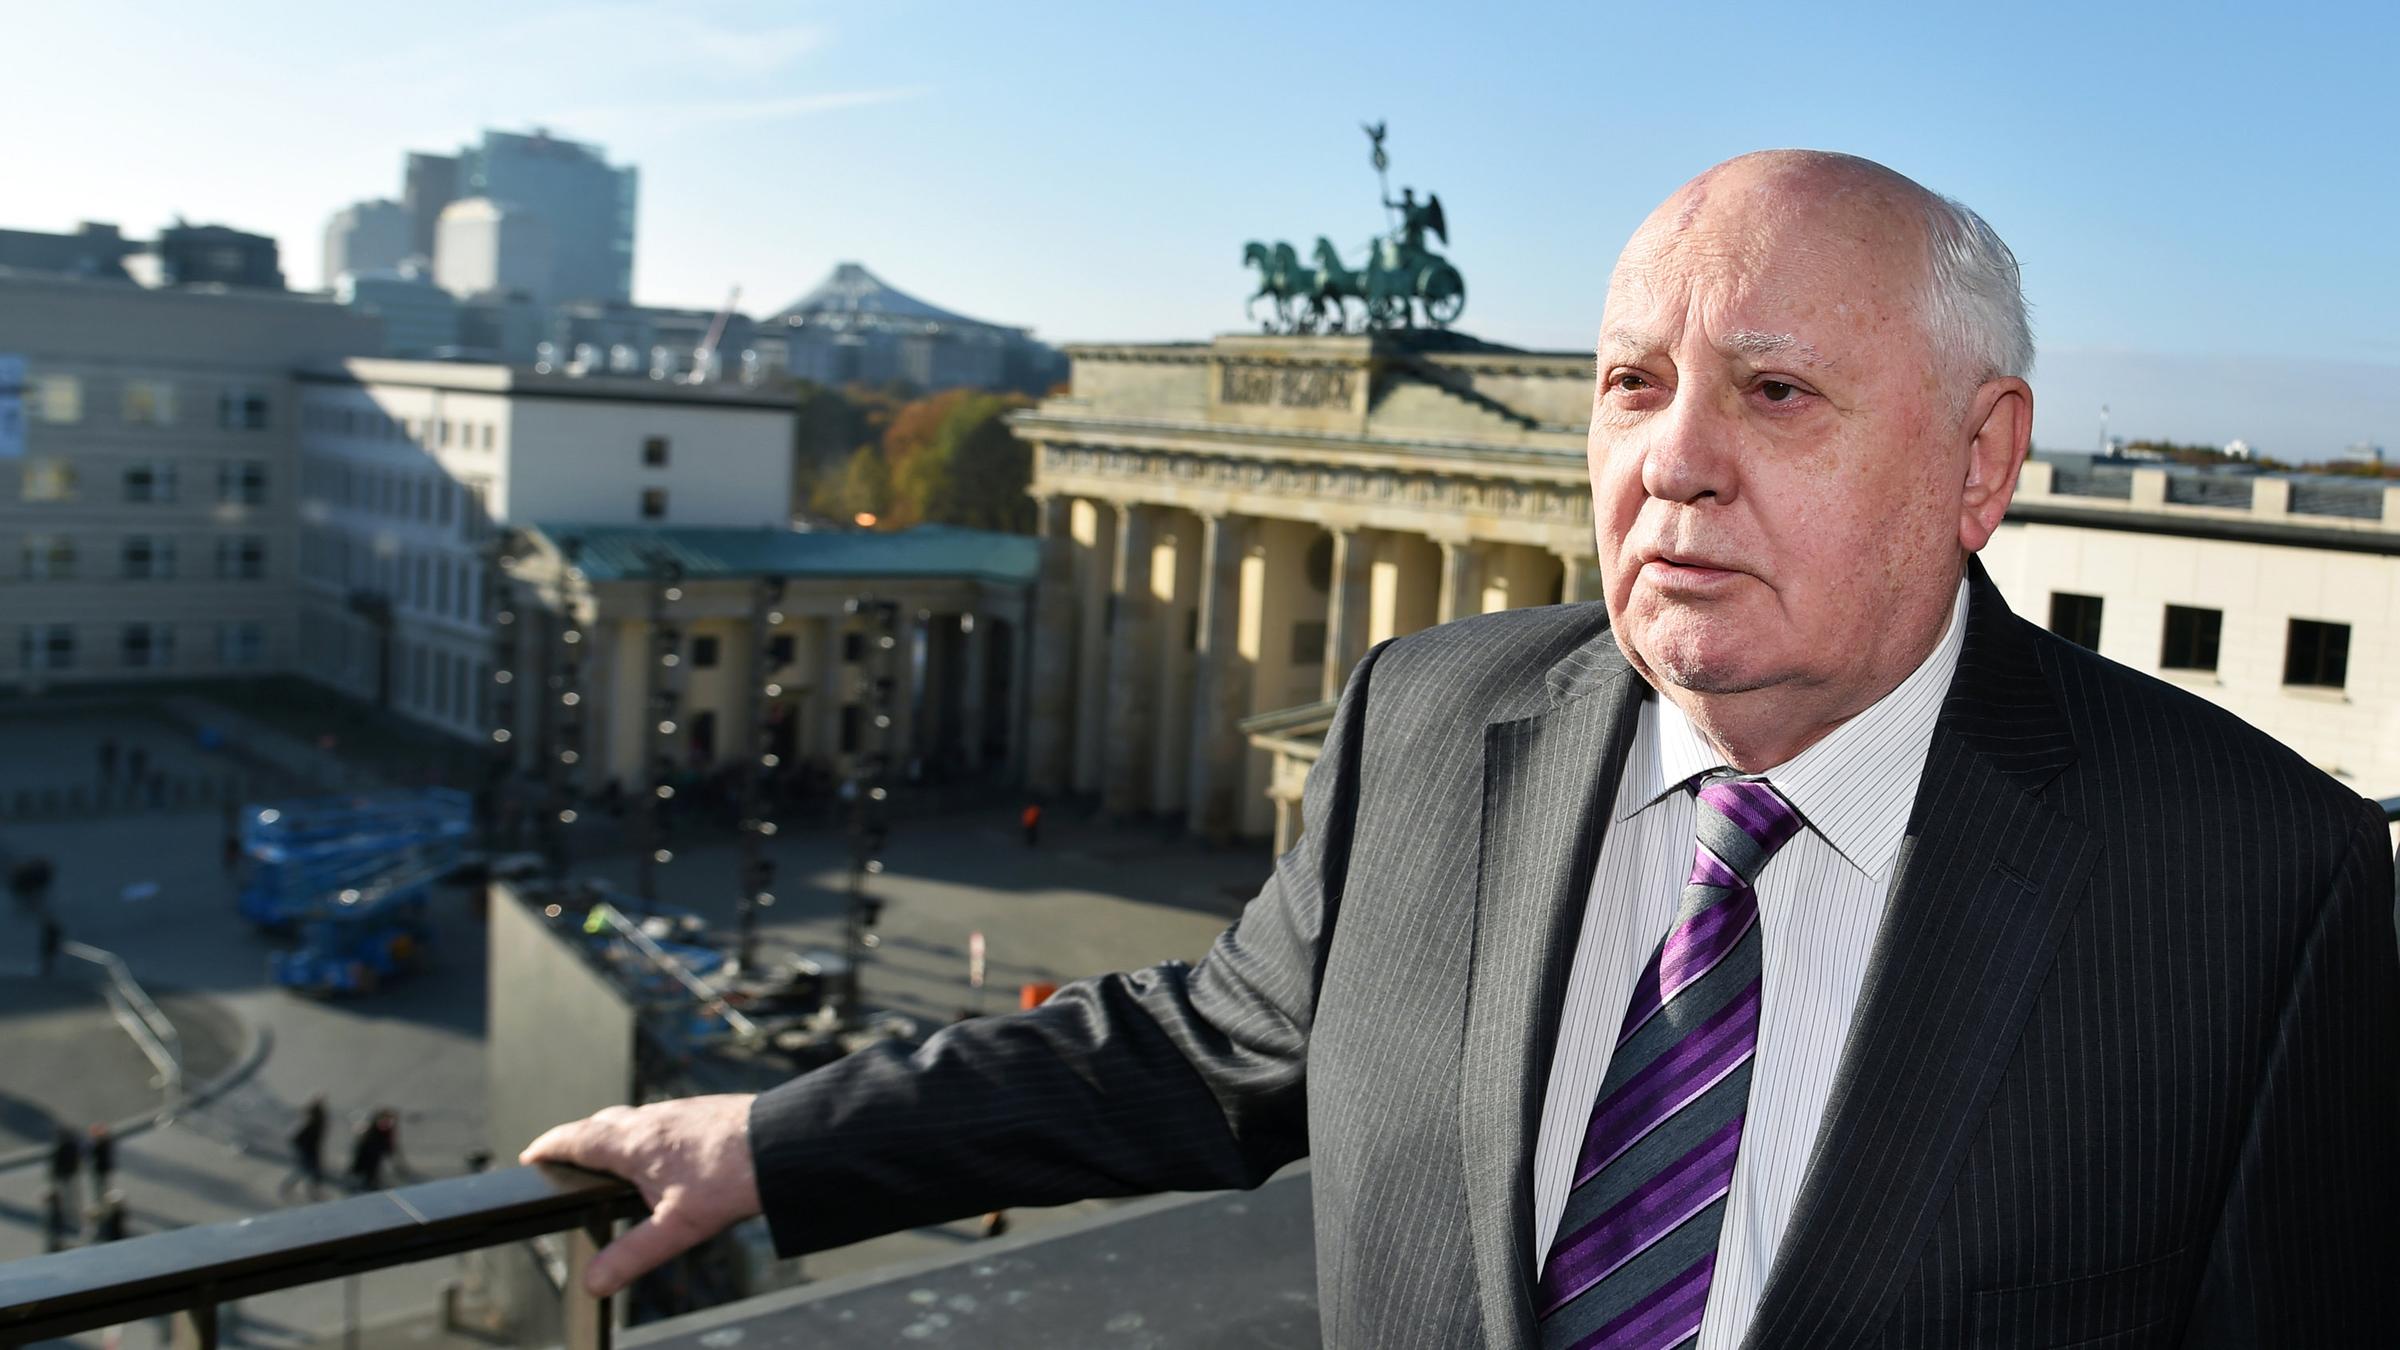 Michail Gorbatschow bei Gedenkfeier 2014 in Berlin